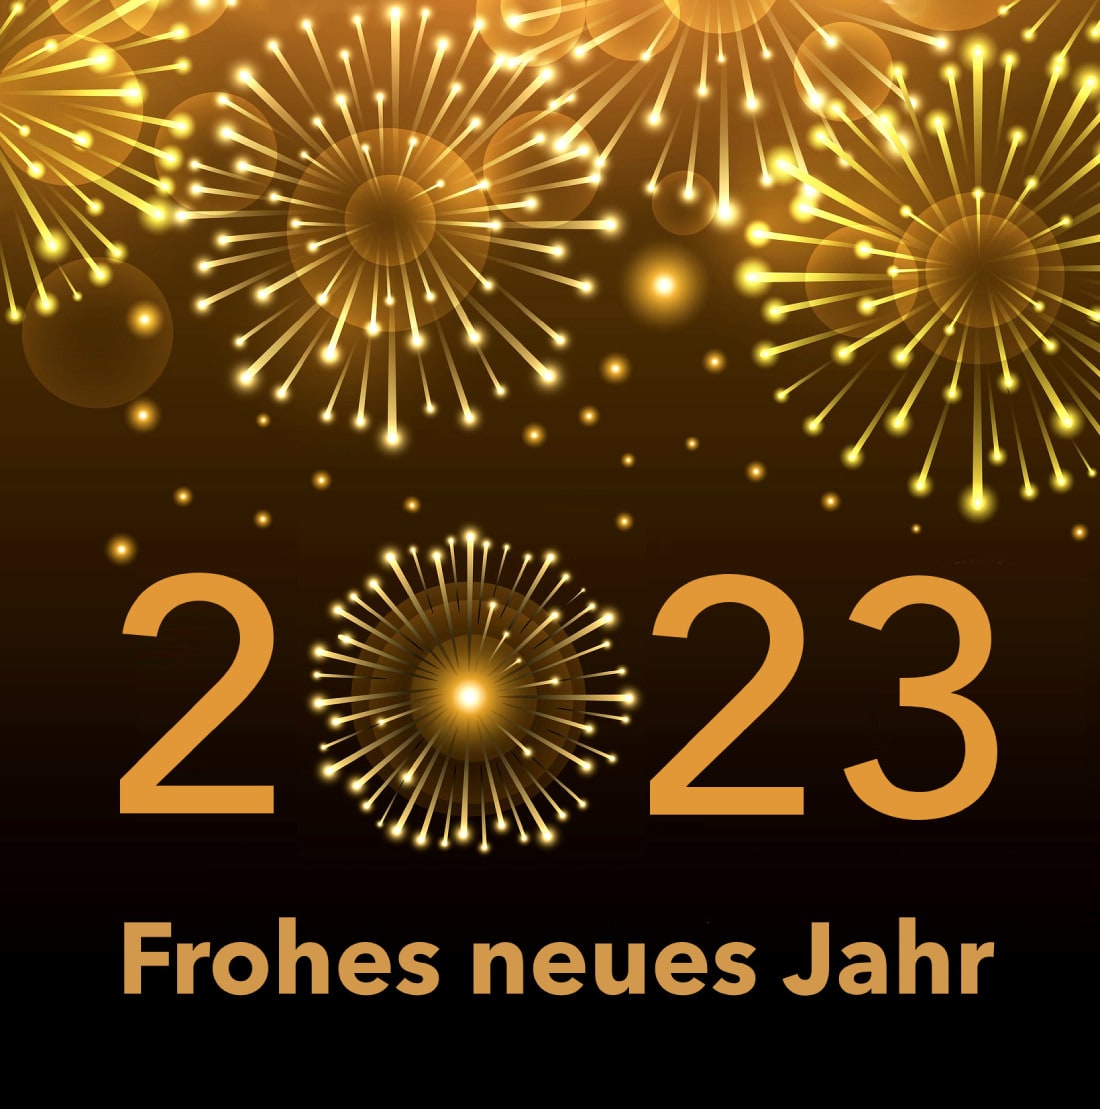 2023 Frohes neues Jahr.